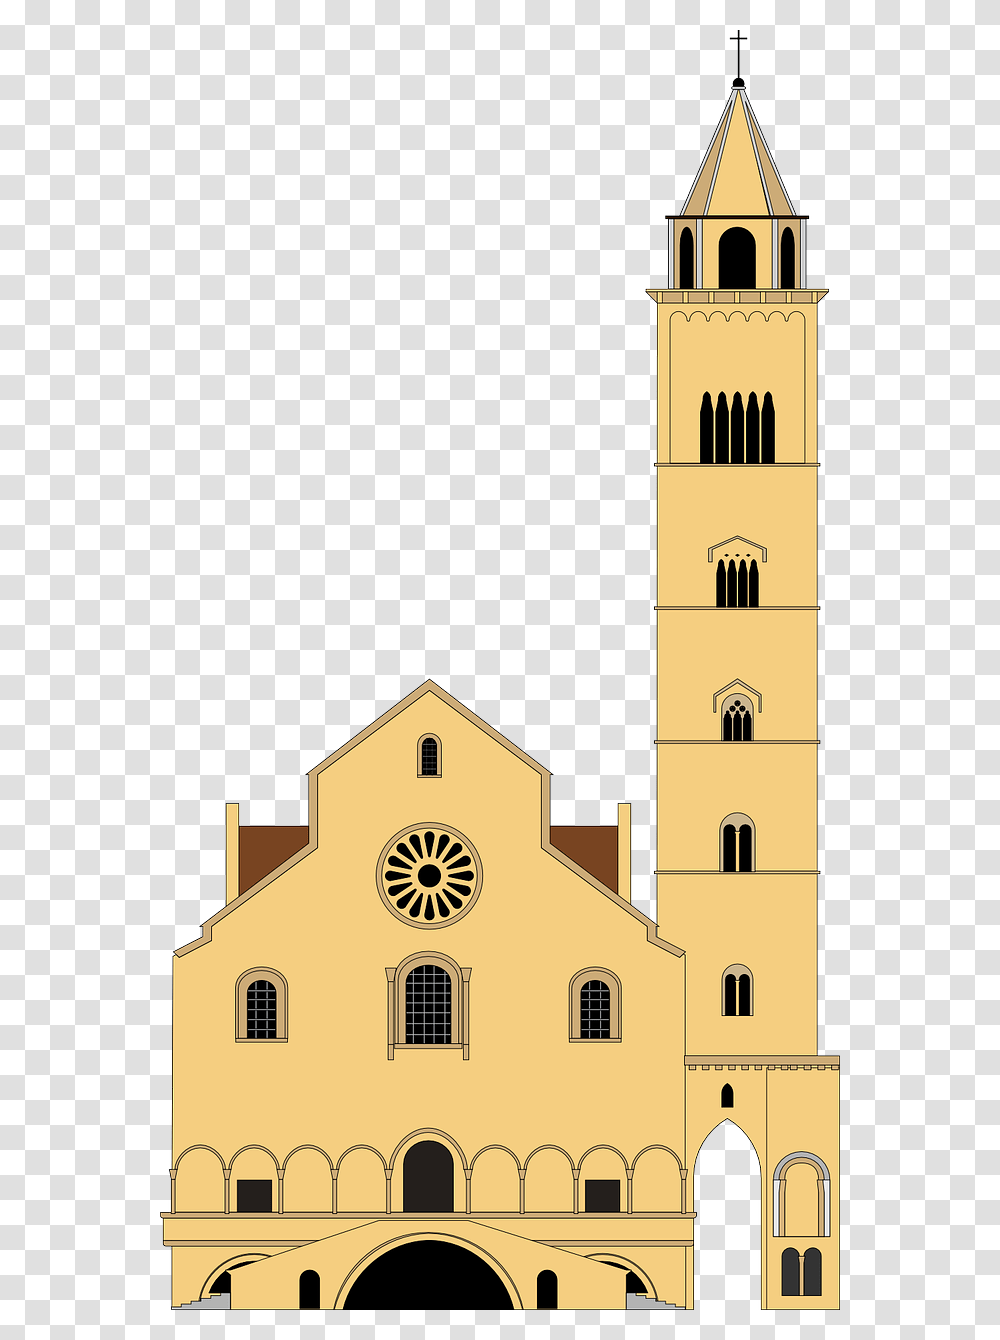 Disegno Della Cattedrale Di Trani, Architecture, Building, Tower, Church Transparent Png